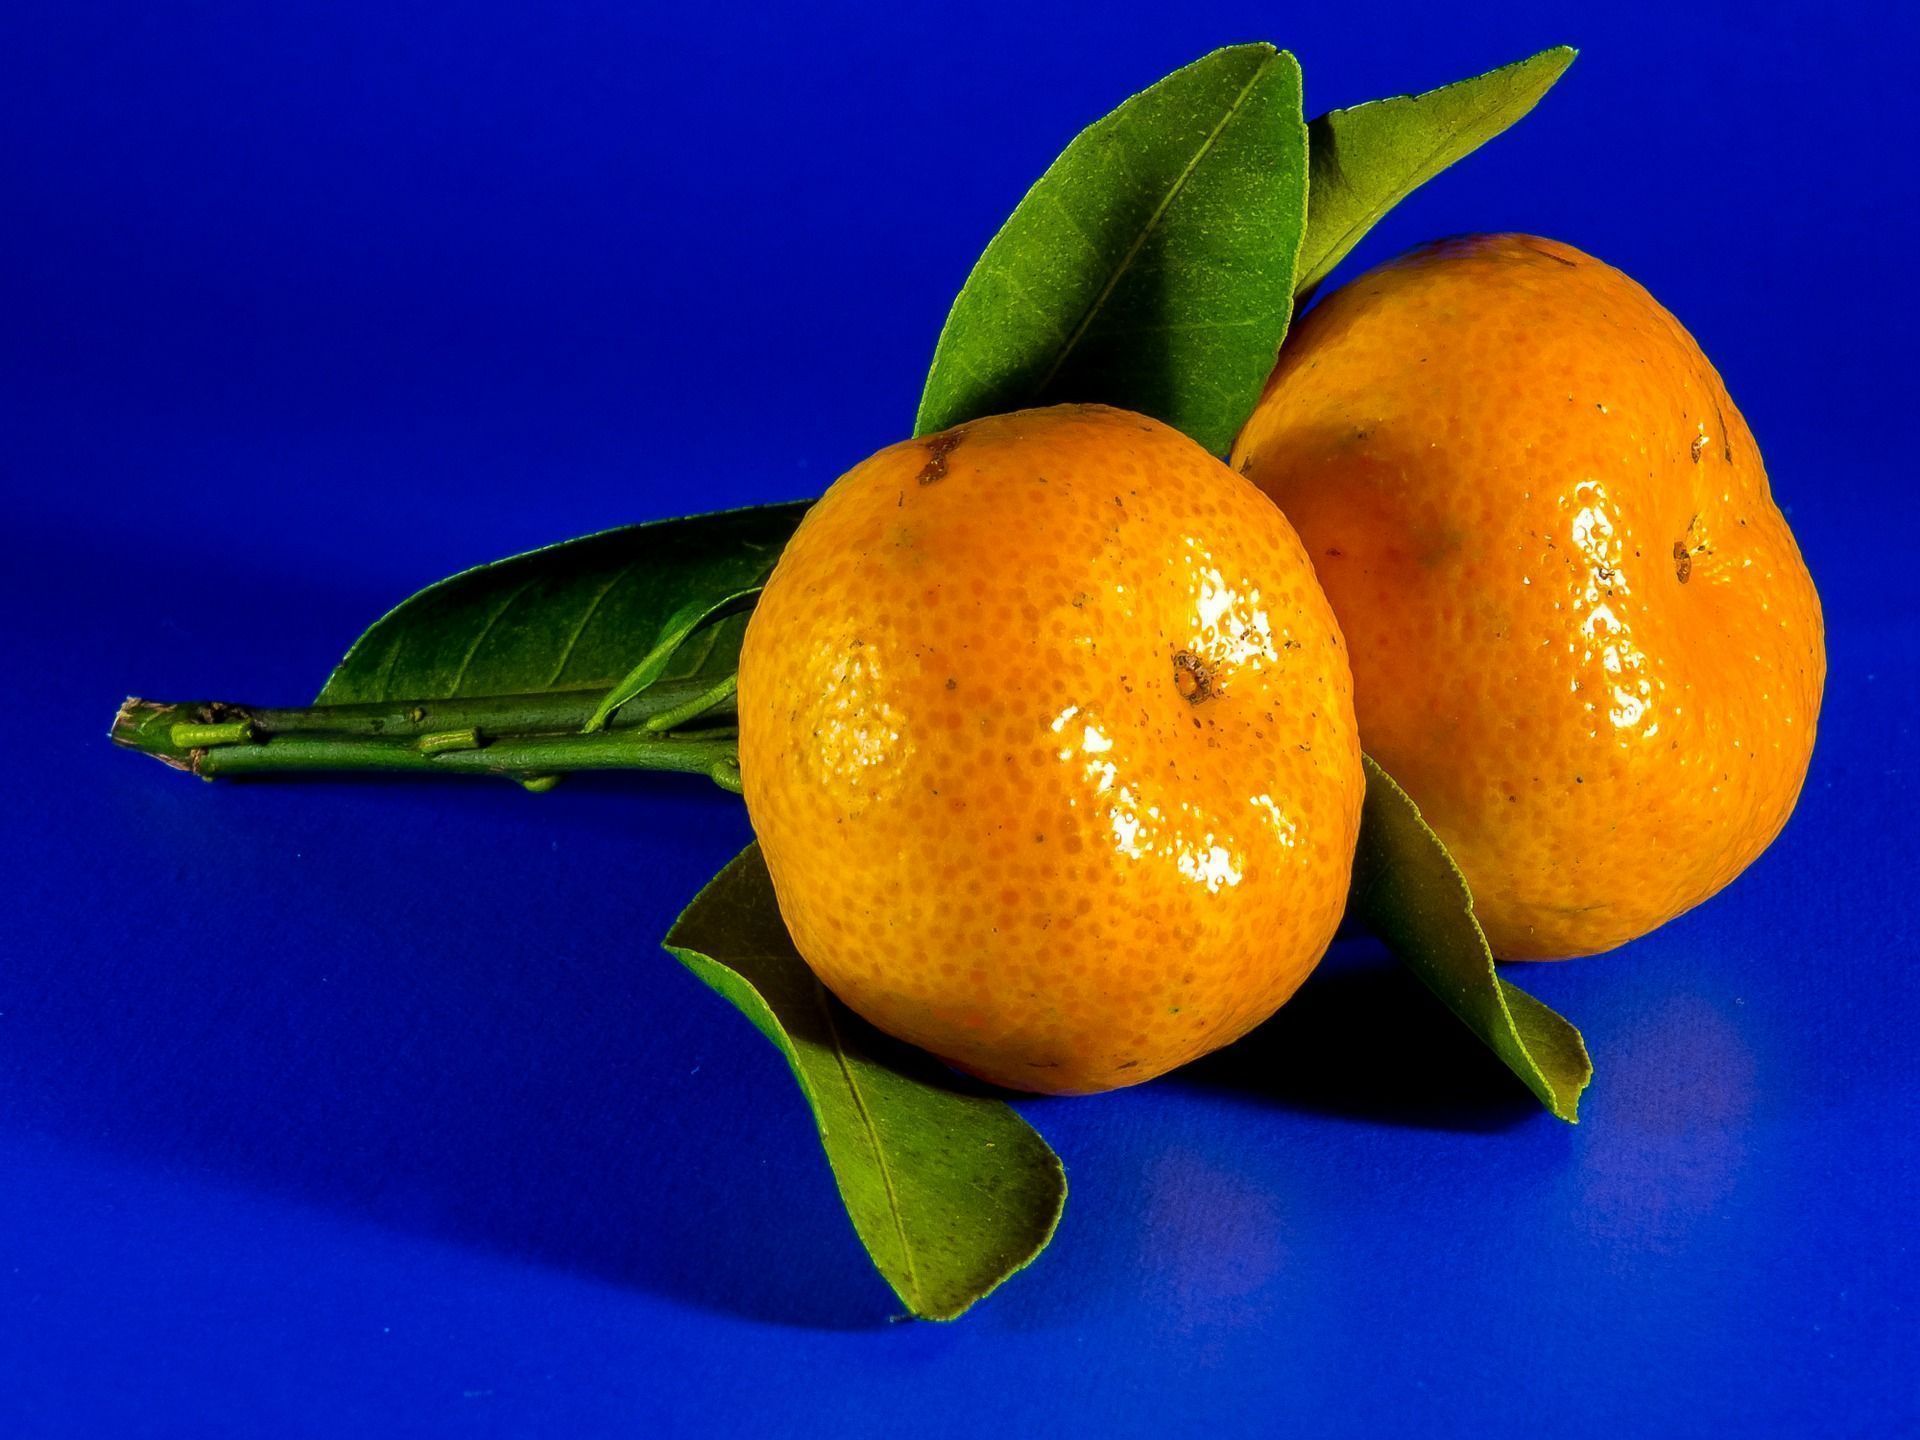 Receitas com tangerina para reforçar a vitamina C